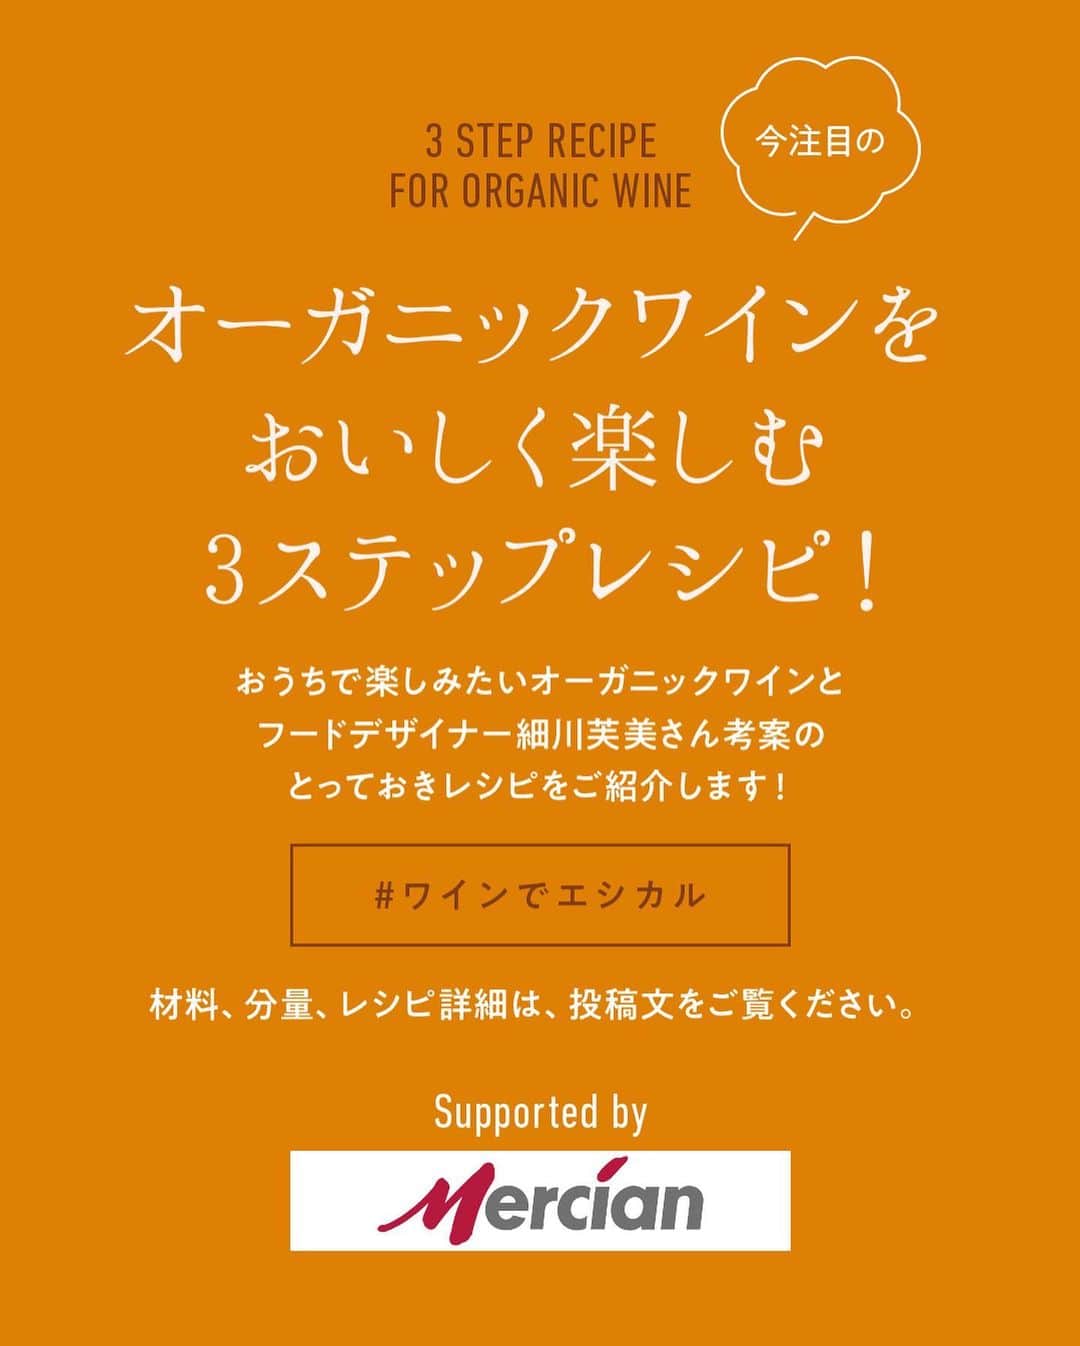 Hanako公式さんのインスタグラム写真 - (Hanako公式Instagram)「話題のオーガニックワインをおいしく楽しむおうちレシピ🍷with メルシャン @mercian_ethicalwine のオーガニックワイン【メスタ】編﻿ ﻿ 🍇今回合わせるワインは…﻿ メルシャンのオーガニックワイン「メスタ」﻿ みずみずしい味わいを楽しめる高いコスパのオーガニックワイン。世界のワイン最難関資格「マスター・オブ・ワイン」を持つ醸造家が監修。この品質では驚きの価格を実現し皆さんにお届けします。﻿ __________________________﻿ ﻿ 🍋「豚のレモンしゃぶしゃぶ おろしリンゴとネギ塩だれ」﻿ →ワインは…「メスタ 白」辛口で柑橘の爽やかさ、ミネラル感が特徴。﻿ ﻿ 材料﻿ ・リンゴ：1/2個(150g)﻿ ・長ネギ：1本﻿ ・レモン：輪切り2枚分﻿ ・えのき：1/2パック﻿ ・小松菜：1パック(230g)﻿ ・塩：小さじ1/2﻿ ・豚肩ロース肉：250g﻿ ・豆苗：1/2パック﻿ ・大葉：6枚﻿ ・おでん昆布：1個﻿ ・ローリエ：1枚﻿ ・オリーブオイル：大さじ2﻿ ・白ごま：少々﻿ ・酒：大さじ2﻿ ・水：1000ml﻿ ﻿ 作り方詳細﻿ 1.おでん昆布、ローリエ、レモンの輪切り2枚、長ネギの青い部分、水1000ml、酒を鍋に入れ火にかける。﻿ 2.小松菜は5cm幅のざく切りにする。豆苗は根元を切る。えのきは石づきを切り落とし、手でほぐす。長ネギの白い部分はみじん切りと白髪ネギに分ける。みじん切りに塩小さじ1/2をふる。﻿ 3.小松菜、豆苗、えのき、豚肩ロース肉を1の鍋に入れ火を通す。﻿ 4.みじん切りにしたネギに塩を入れ、10分ほど置いて水分を出す。リンゴはおろし金ですりおろし、変色しないようにすぐにネギと合わせる。﻿ 5.お好みで大葉、白髪ネギ、ごまと一緒にいただく。﻿ ﻿ ﻿ ﻿ 🥔「フライドポテト クミン香るベシャメルソース」﻿ →ワインは…「メスタ 赤」フレッシュでジューシーな果実味が特徴。﻿ ﻿ 材料﻿ ・じゃがいも(男爵)：2個(450g)﻿ ・バター：10g﻿ ・薄力粉：10g﻿ ・牛乳：150ml﻿ ・クミンパウダー：小さじ1/2﻿ ・塩：適量﻿ ・白胡椒：少々﻿ ・イタリアンパセリ：1〜2本﻿ ・粗挽き黒胡椒：少々﻿ ・揚げ油：適量﻿ ﻿ 作り方詳細﻿ 1.じゃがいもはよく洗い、皮付きのまま一口大に割るように切る。﻿ 2.鍋に油を入れ、じゃがいもを中火で全体がきつね色になるまで揚げる(※)。熱いうちに塩をふる。﻿ 3.ベシャメルソースを作る。鍋にバターを入れ中火で溶かし、ふるった薄力粉を加え炒める。弱火にし、牛乳を5回に分けて入れ、その都度よく混ぜる。クミンパウダー、塩、白胡椒で味をつける。﻿ 4.ボウルにフライドポテトを入れ、塩、パセリを加えよく混ぜる。皿に盛り付けベシャメルソースをかけ、仕上げに黒胡椒をふる。﻿ ※油が冷たい状態から揚げる﻿ ﻿ __________________________﻿ ﻿ オーガニックワインで気軽に始めよう。わたしにイイこと、みんなにイイこと。みなさまのオーガニックワインの楽しみ方を #ワインでエシカル でぜひ教えてください。﻿ ﻿ レシピを考案したのは…﻿ 細川 芙美 / フードデザイナー。ロケ弁ブランドをはじめ、レシピ提供やメニューのプロデュースも手がける。著書『#ひとりじめ飯』（光文社）が発売中。@humihosokawa﻿ ﻿ #Hanako #Hanako_magazine #私らしいエシカル #ワインでエシカル #メルシャン #mercian#ワイン #オーガニック #オーガニックワイン #自然派 #エシカルな暮らし #サスティナブル #メスタ #PR #ワインのつまみ #ワインのある暮らし #エシカルワイン #ナチュラルワイン #簡単レシピ #おうちごはん #おうち時間」10月24日 19時01分 - hanako_magazine